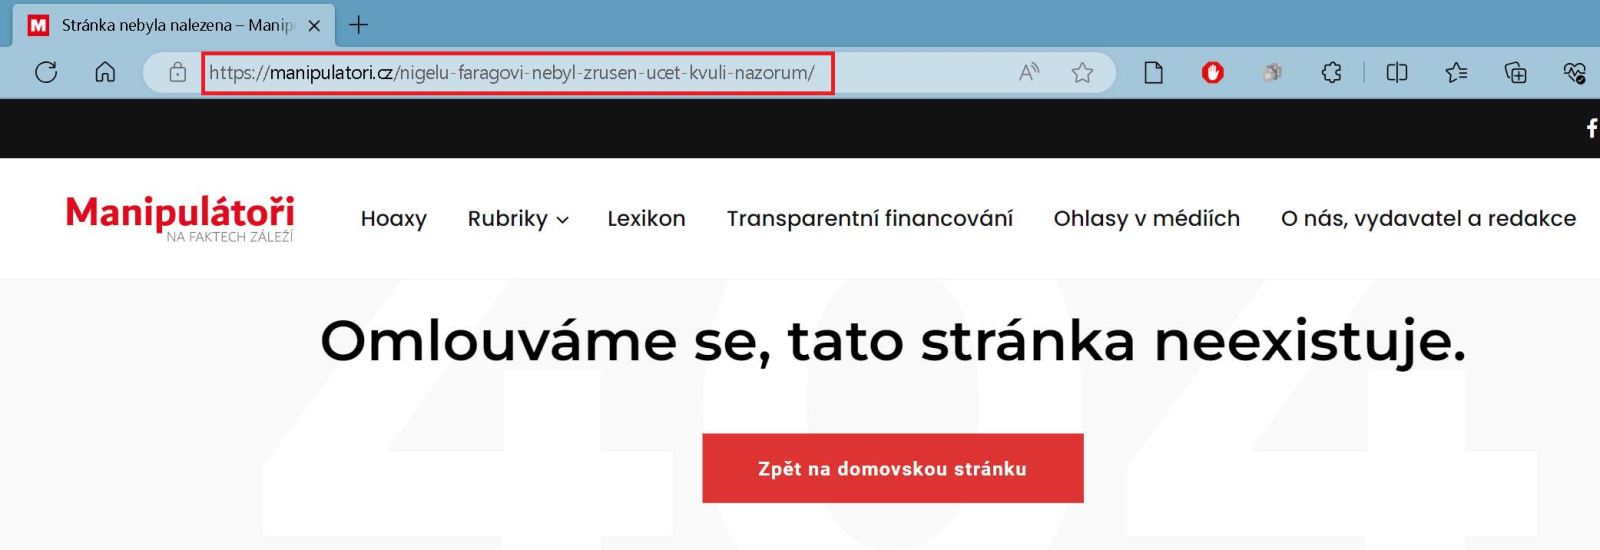 A dnes již článek na webu Manipulatori.cz není k nalezení